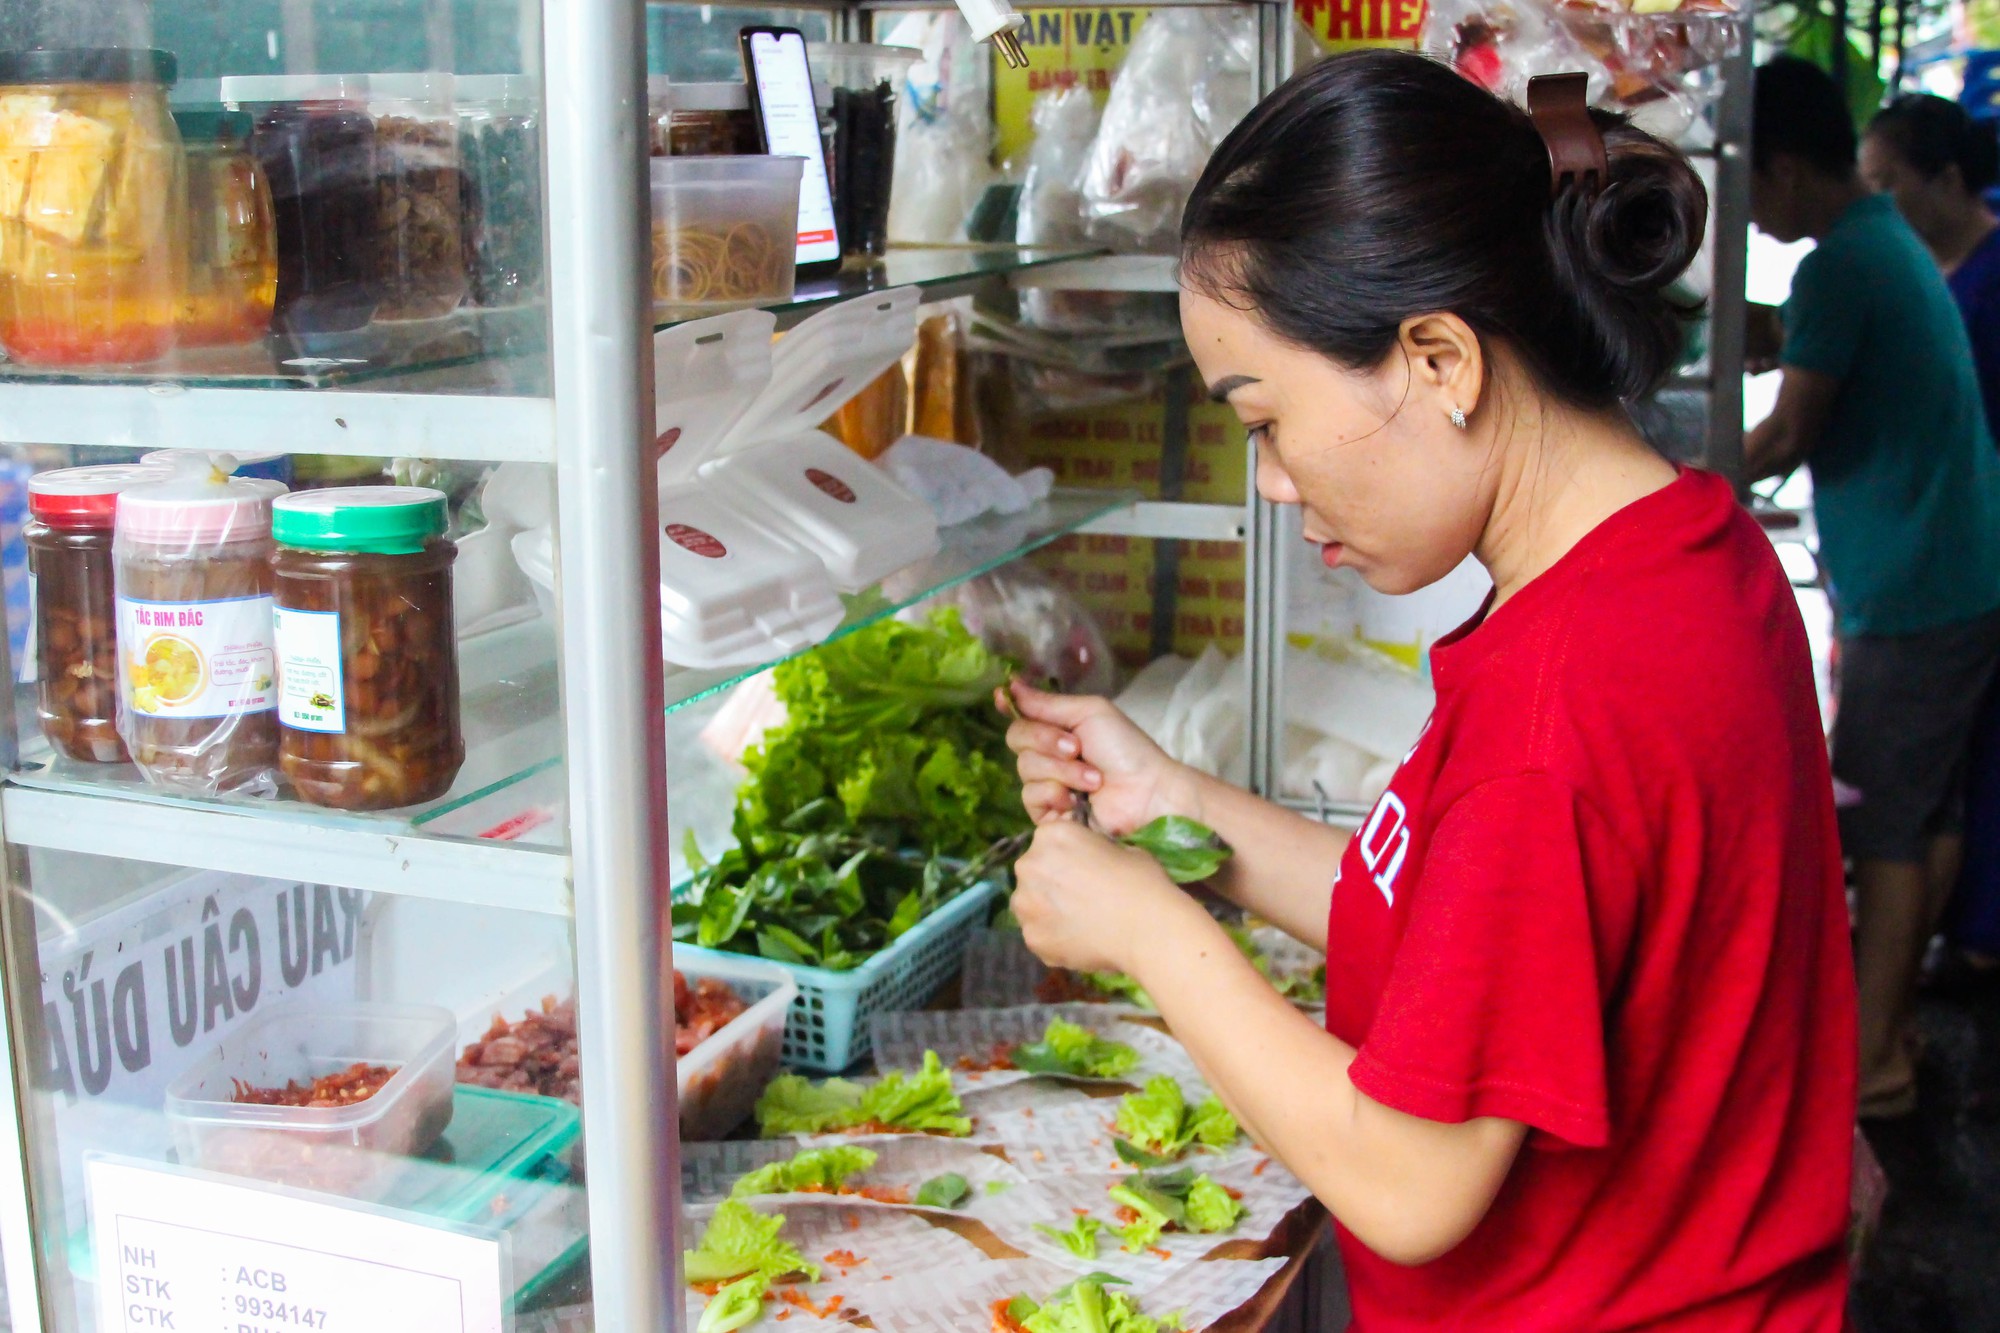 Thành phố Hồ Chí Minh: Du khách tò mò với loại bánh dài cả mét - Ảnh 2.